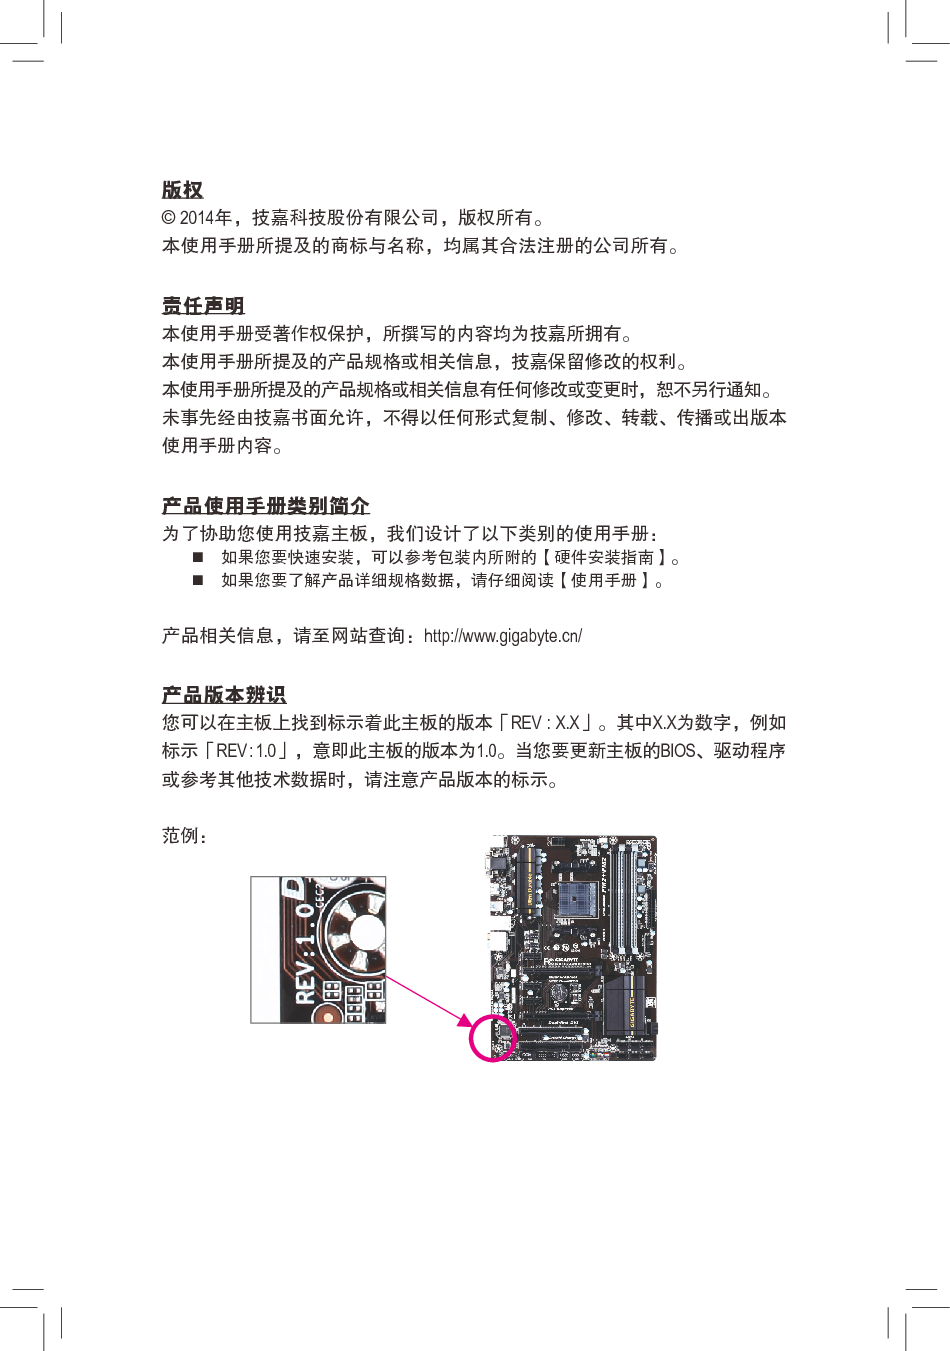 技嘉 Gigabyte GA-F2A88XM-D3H 3101版 使用手册 第2页